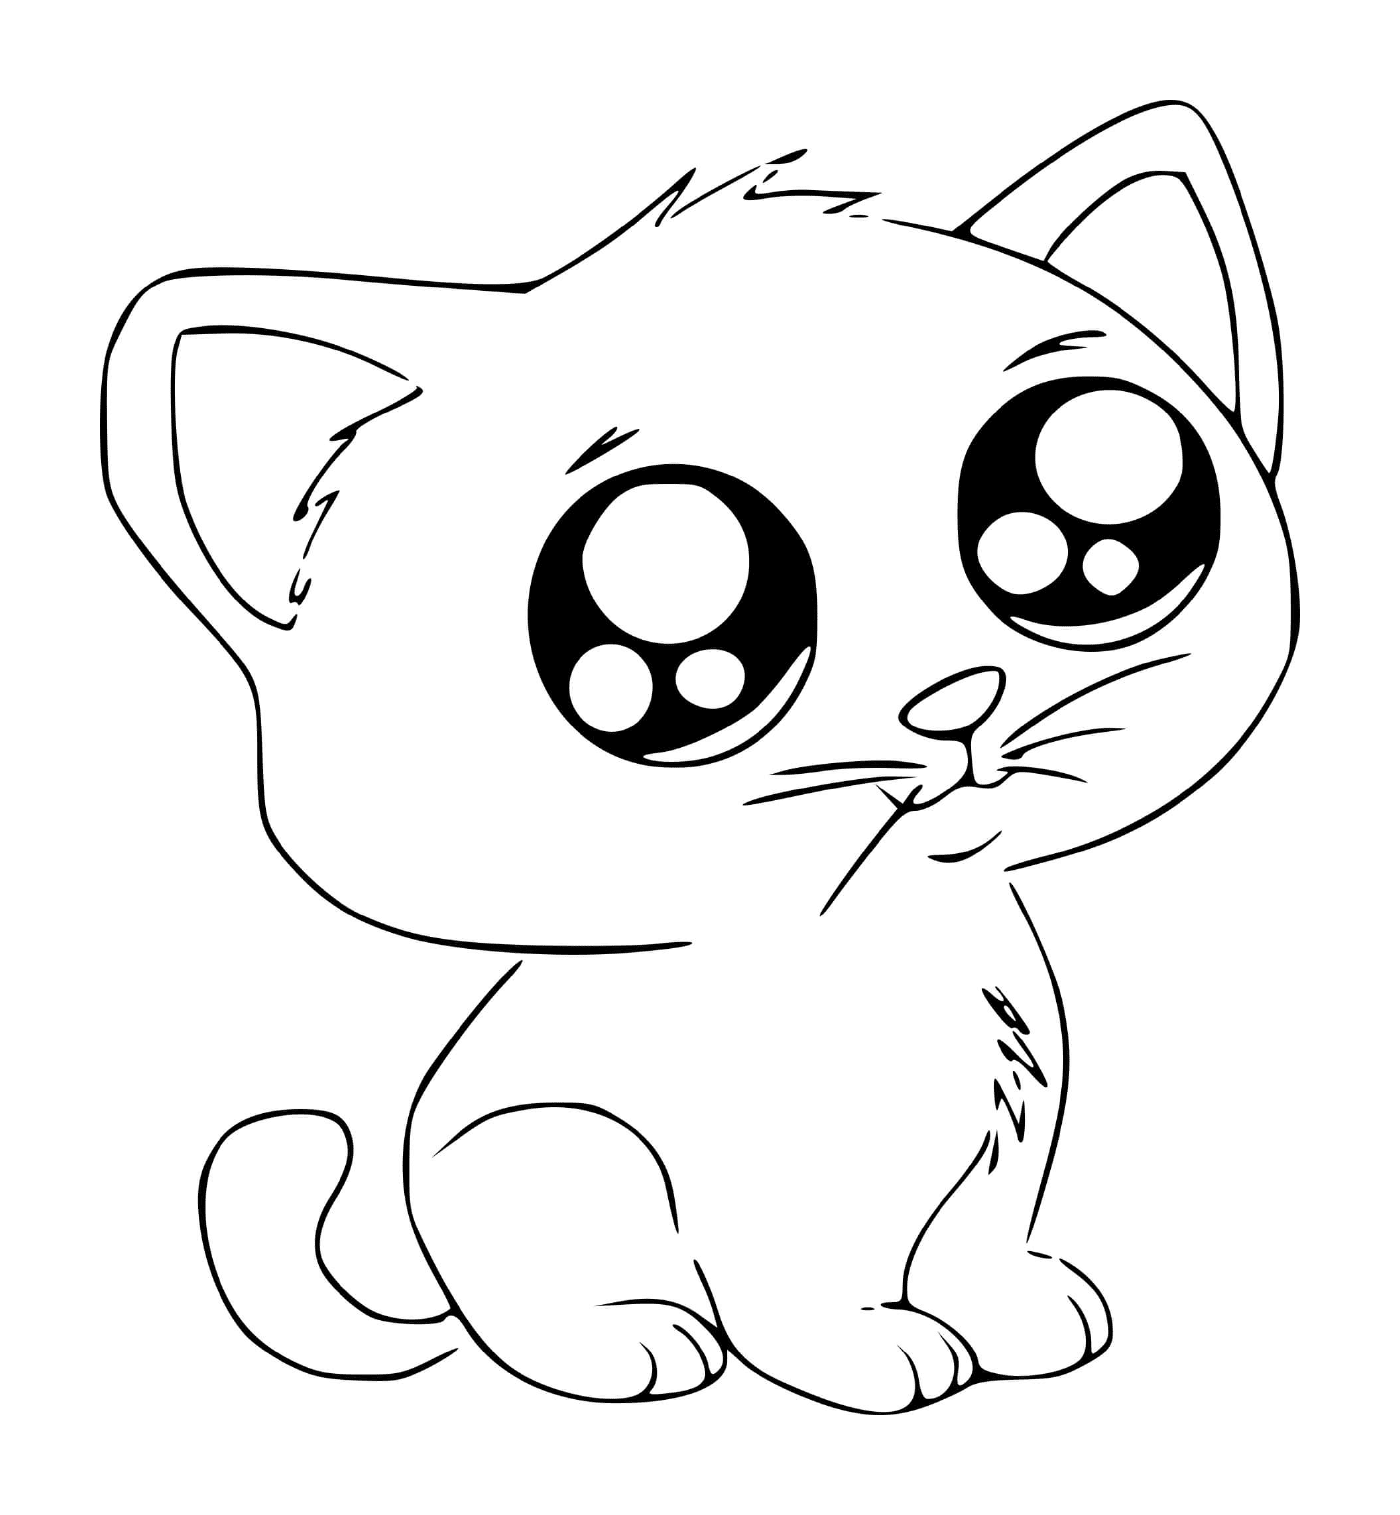  Un lindo gatito de estilo manga kawaii 